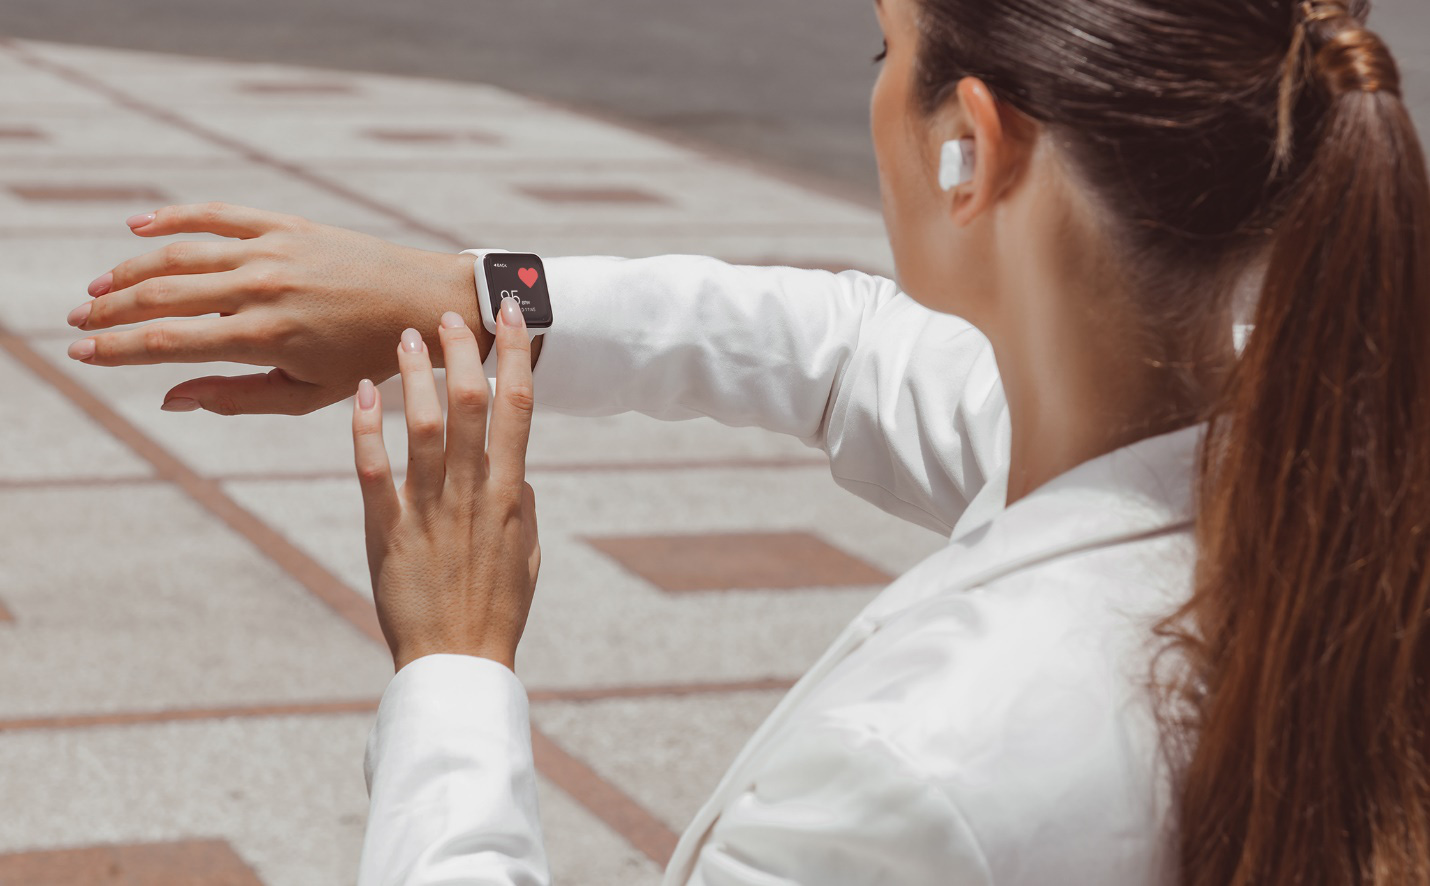 Partron ra mắt hai mẫu đồng hồ thông minh Urban HR và We-temp Band, Made in Việt Nam, có đo nhiệt độ cơ thể giá chỉ từ 1.290.000 đ - Ảnh 4.